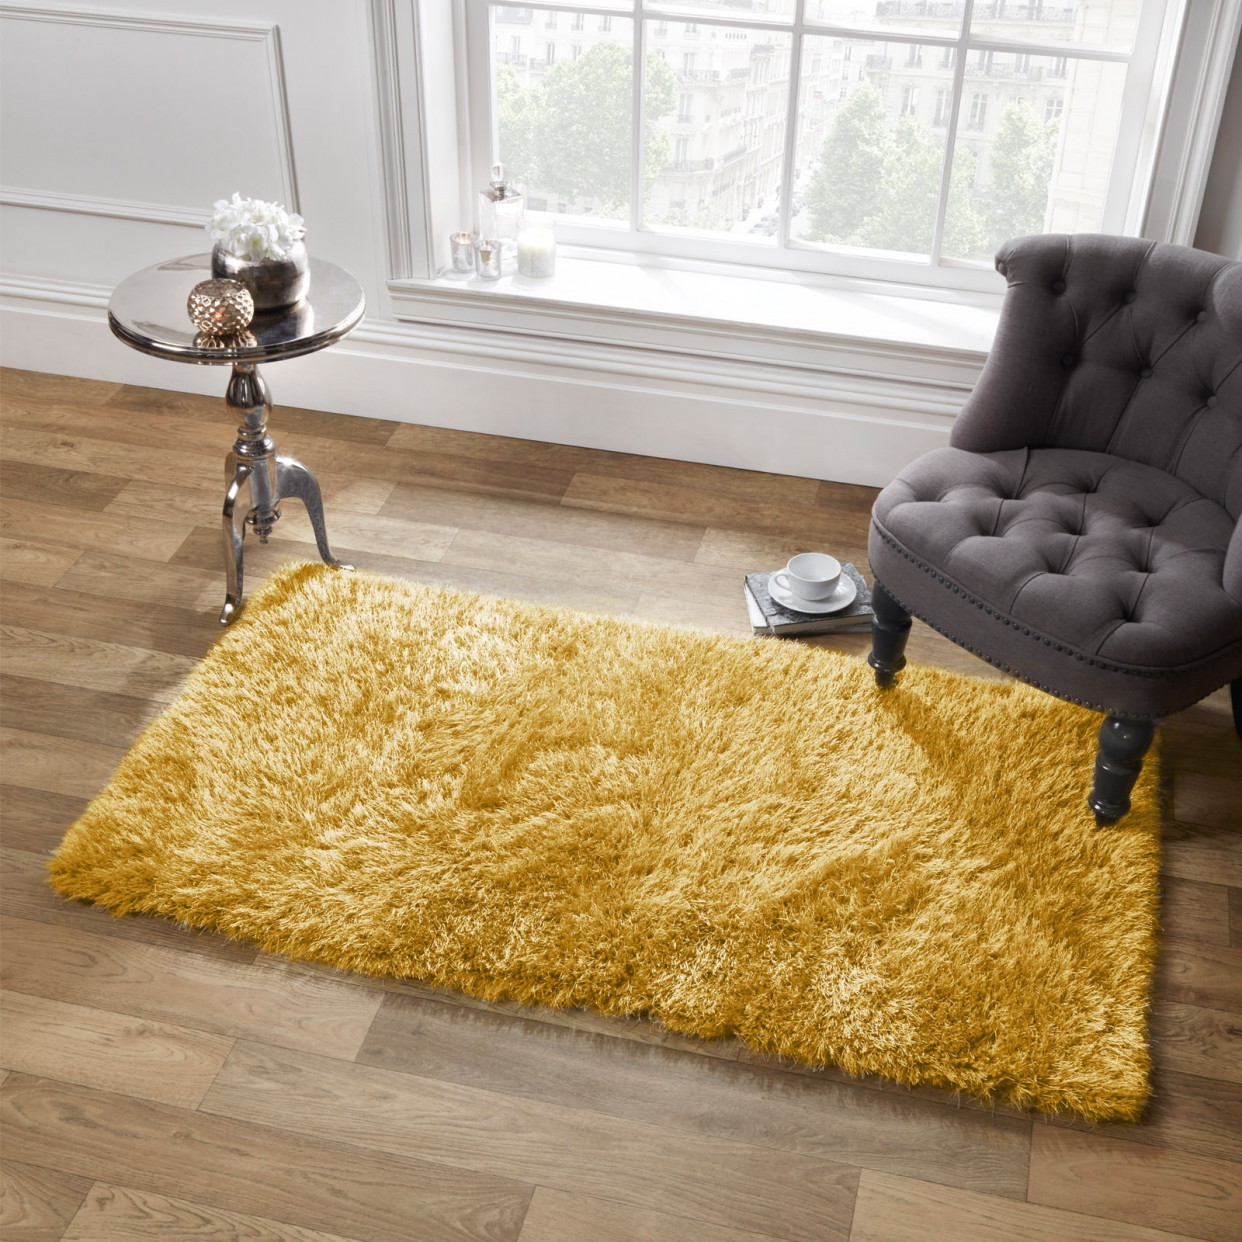 Sienna Large Shaggy Soft Floor Rug 5cm Pile, Ochre Yellow - 80 x 150cm>